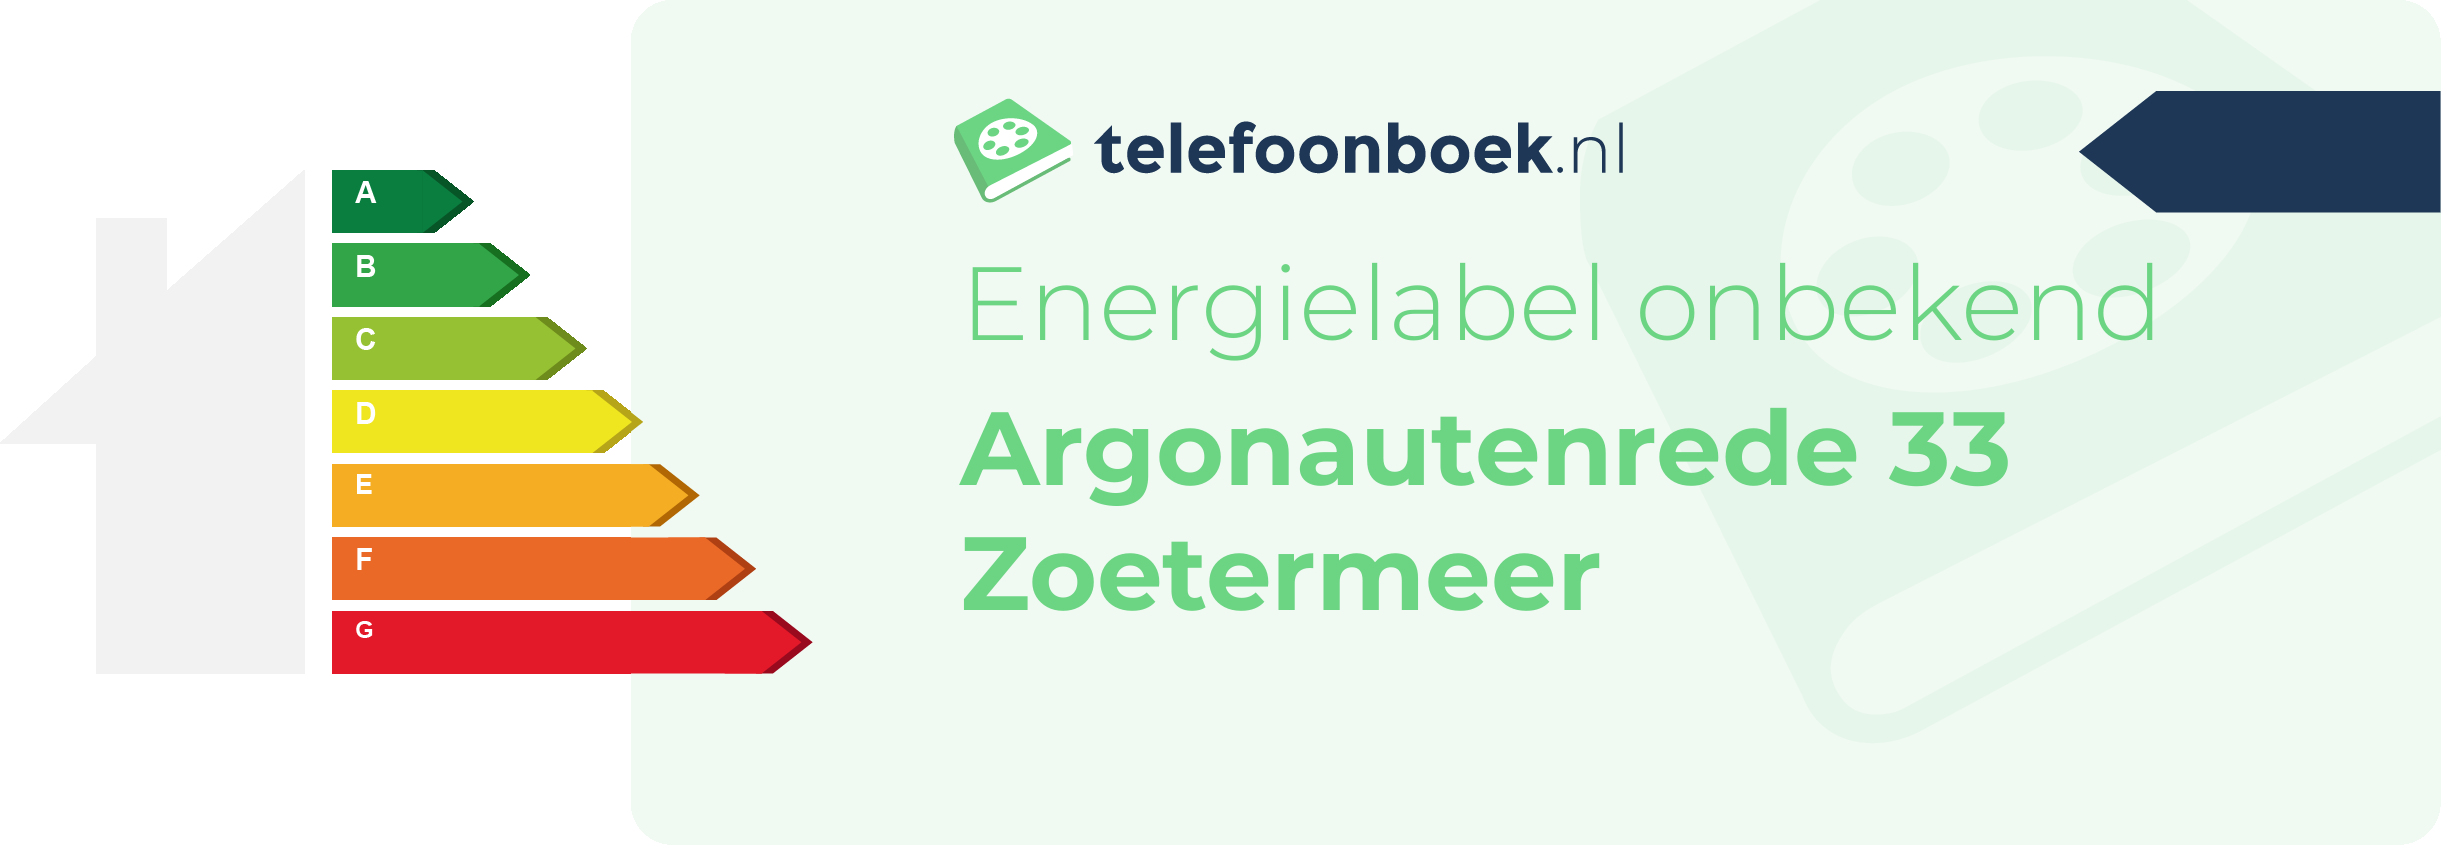 Energielabel Argonautenrede 33 Zoetermeer